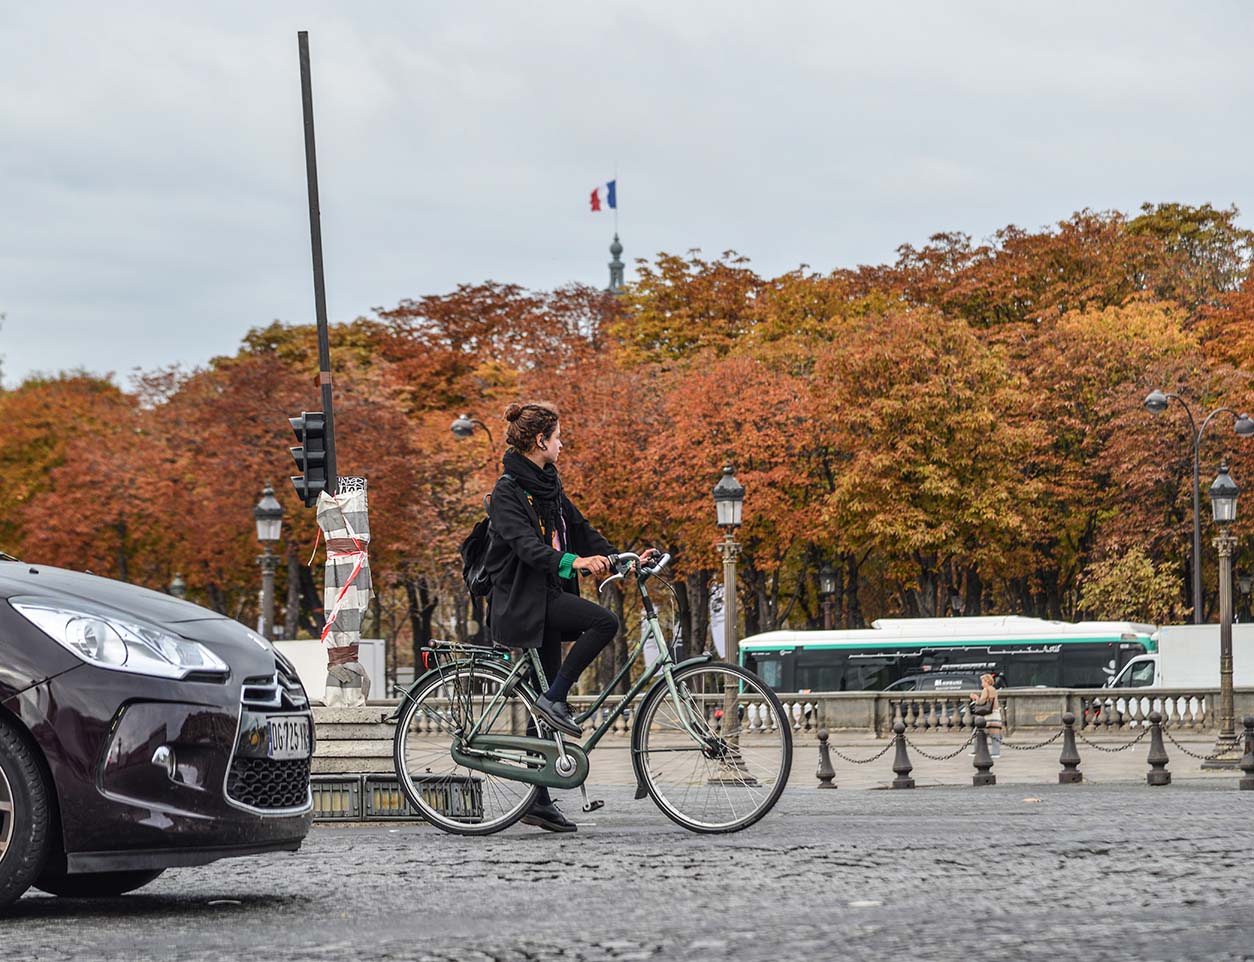 Paris, bikeshare, cycling, smart city, Veligo